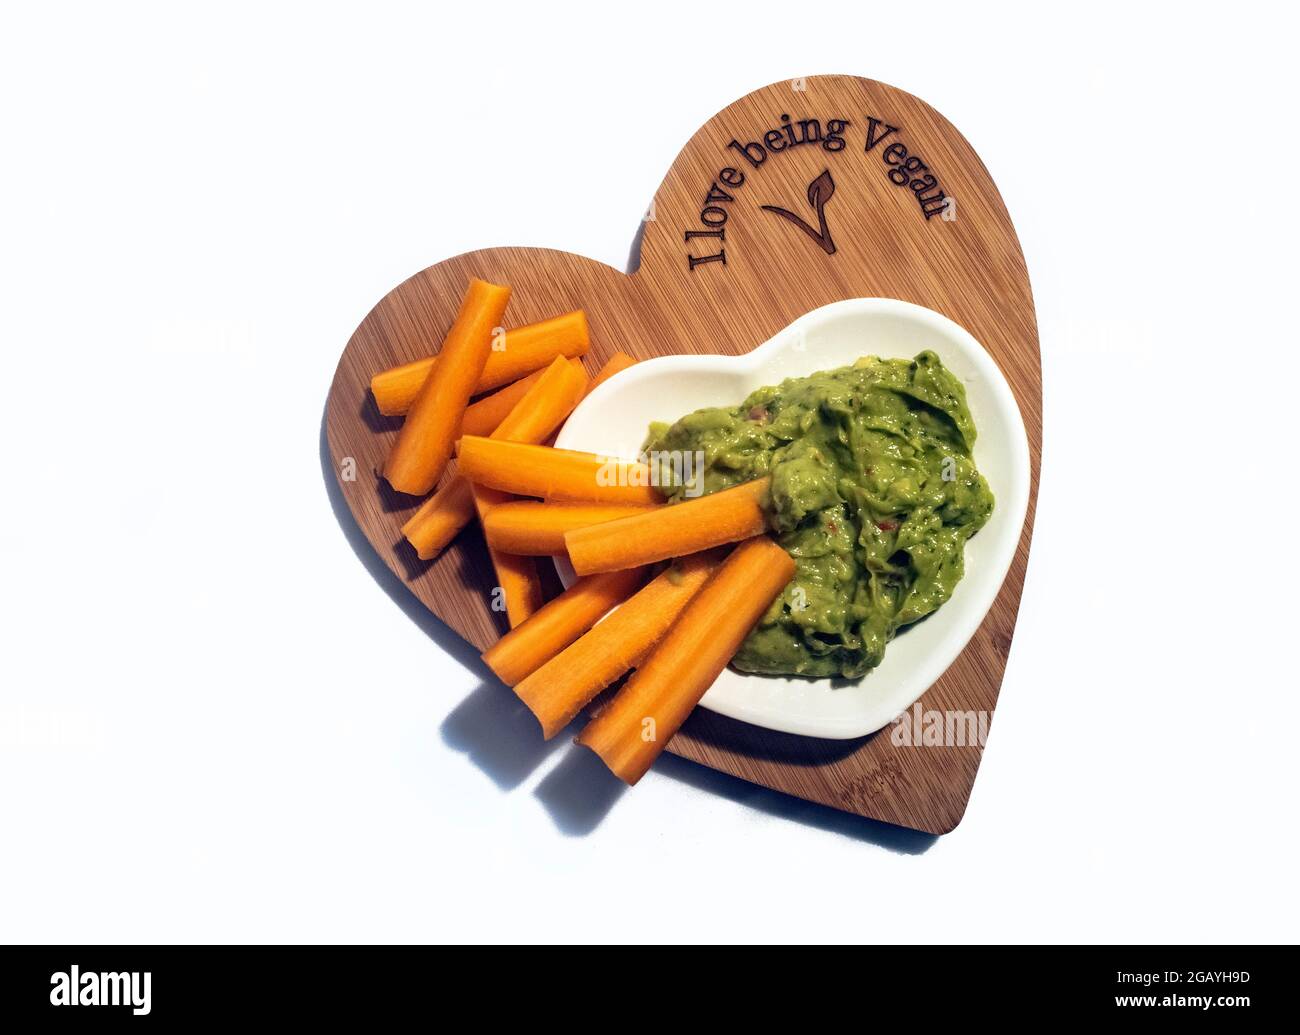 Cibo sano di serpente Vegano - Quacamole Vegano e batons di carote su una tagliere 'i Love Being Vegan' a forma di cuore. Foto Stock